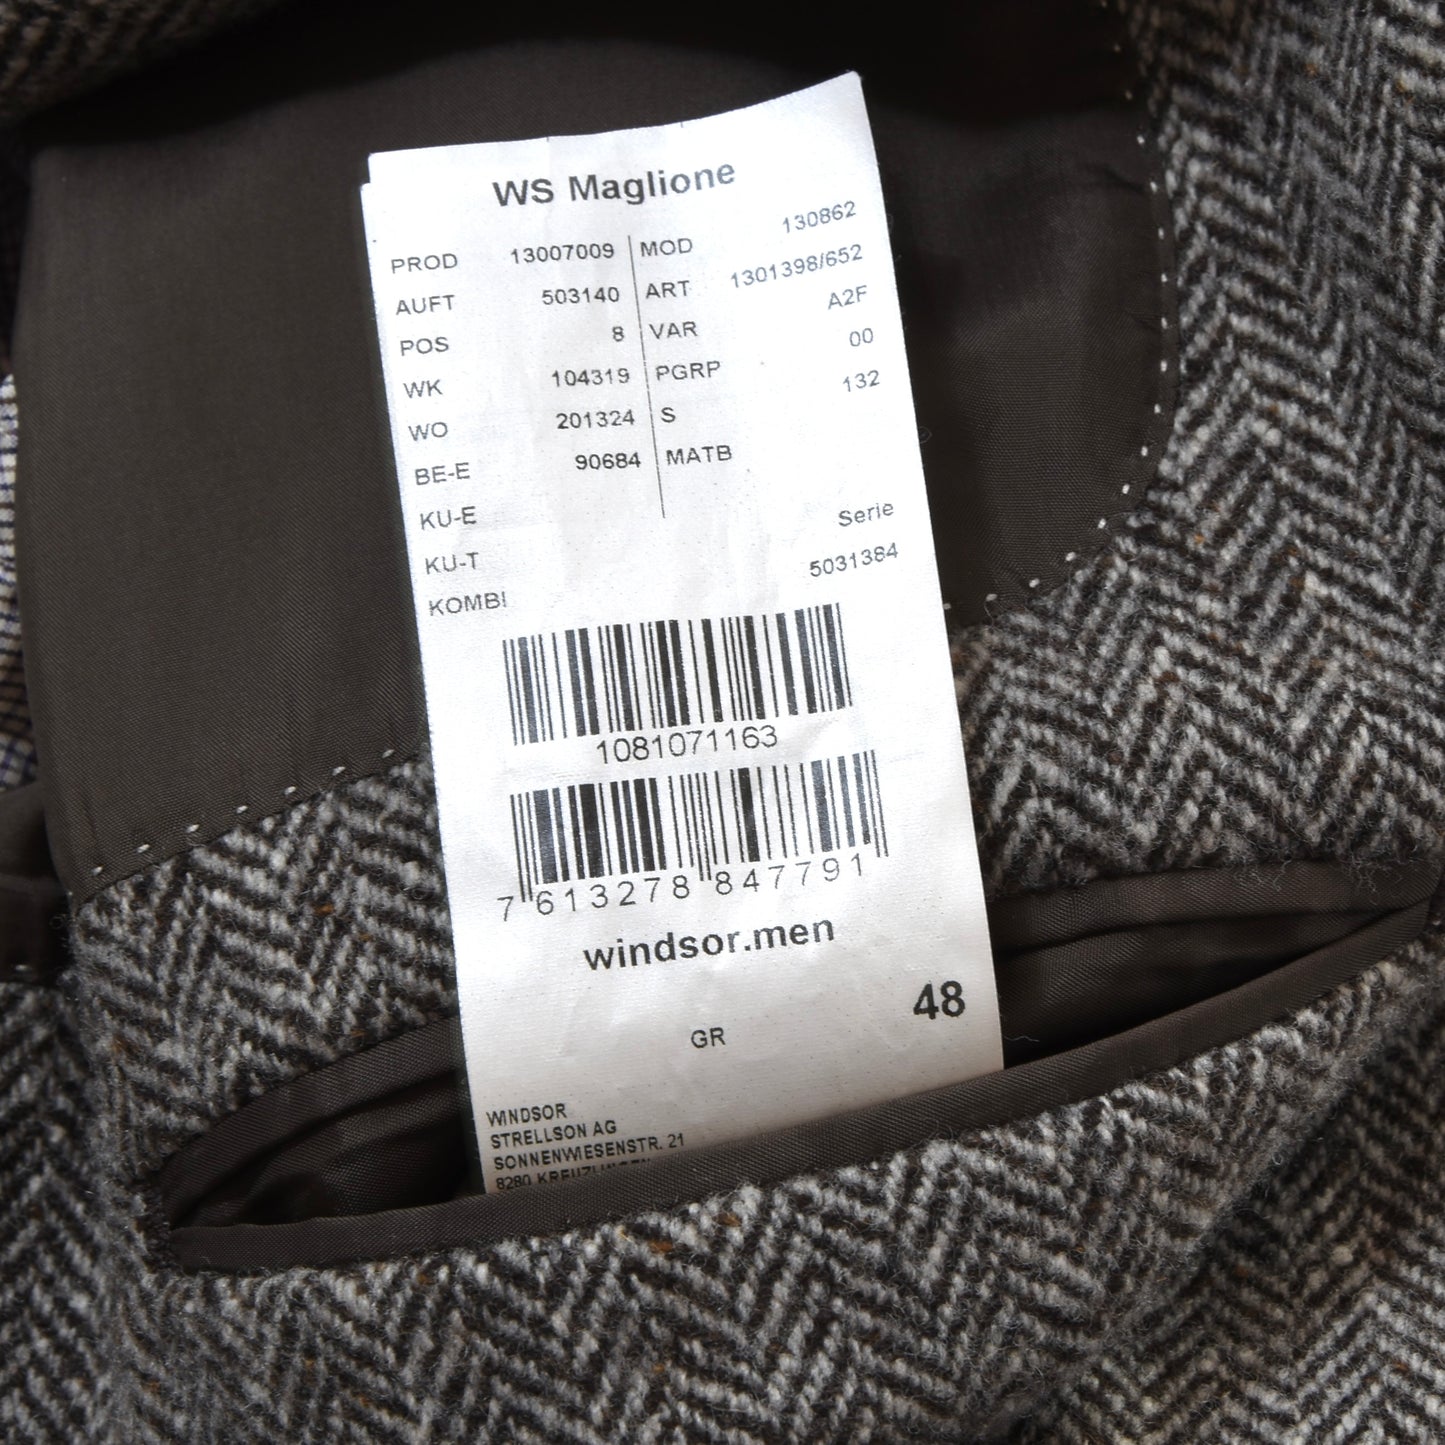 Moessmer x Windsor 1/4 Lined Tweed Jacket Size 48 - Brown Herringbone